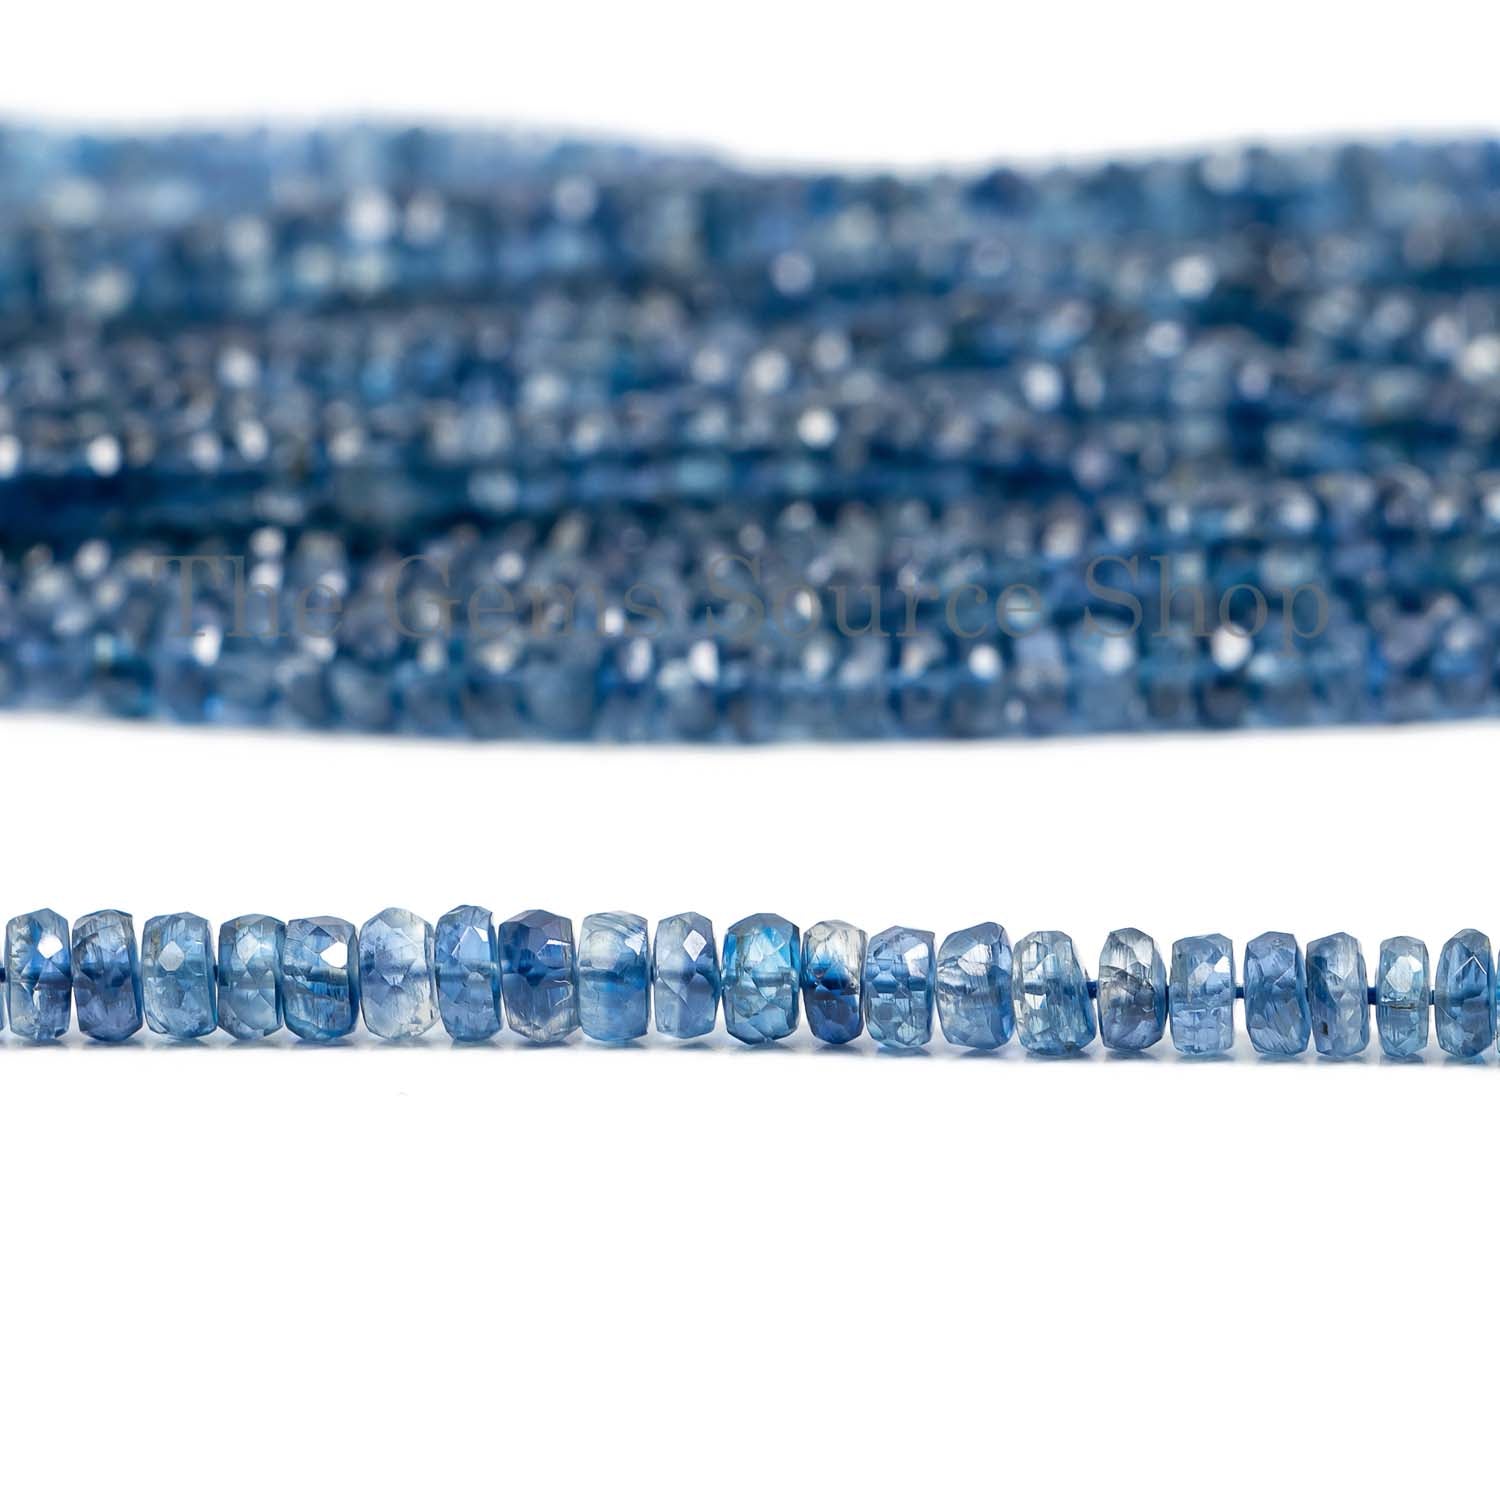 Kyanite Beads, Kyanite Rondelle Beads, Kyanite Faceted Beads, Kyanite Gemstone Beads